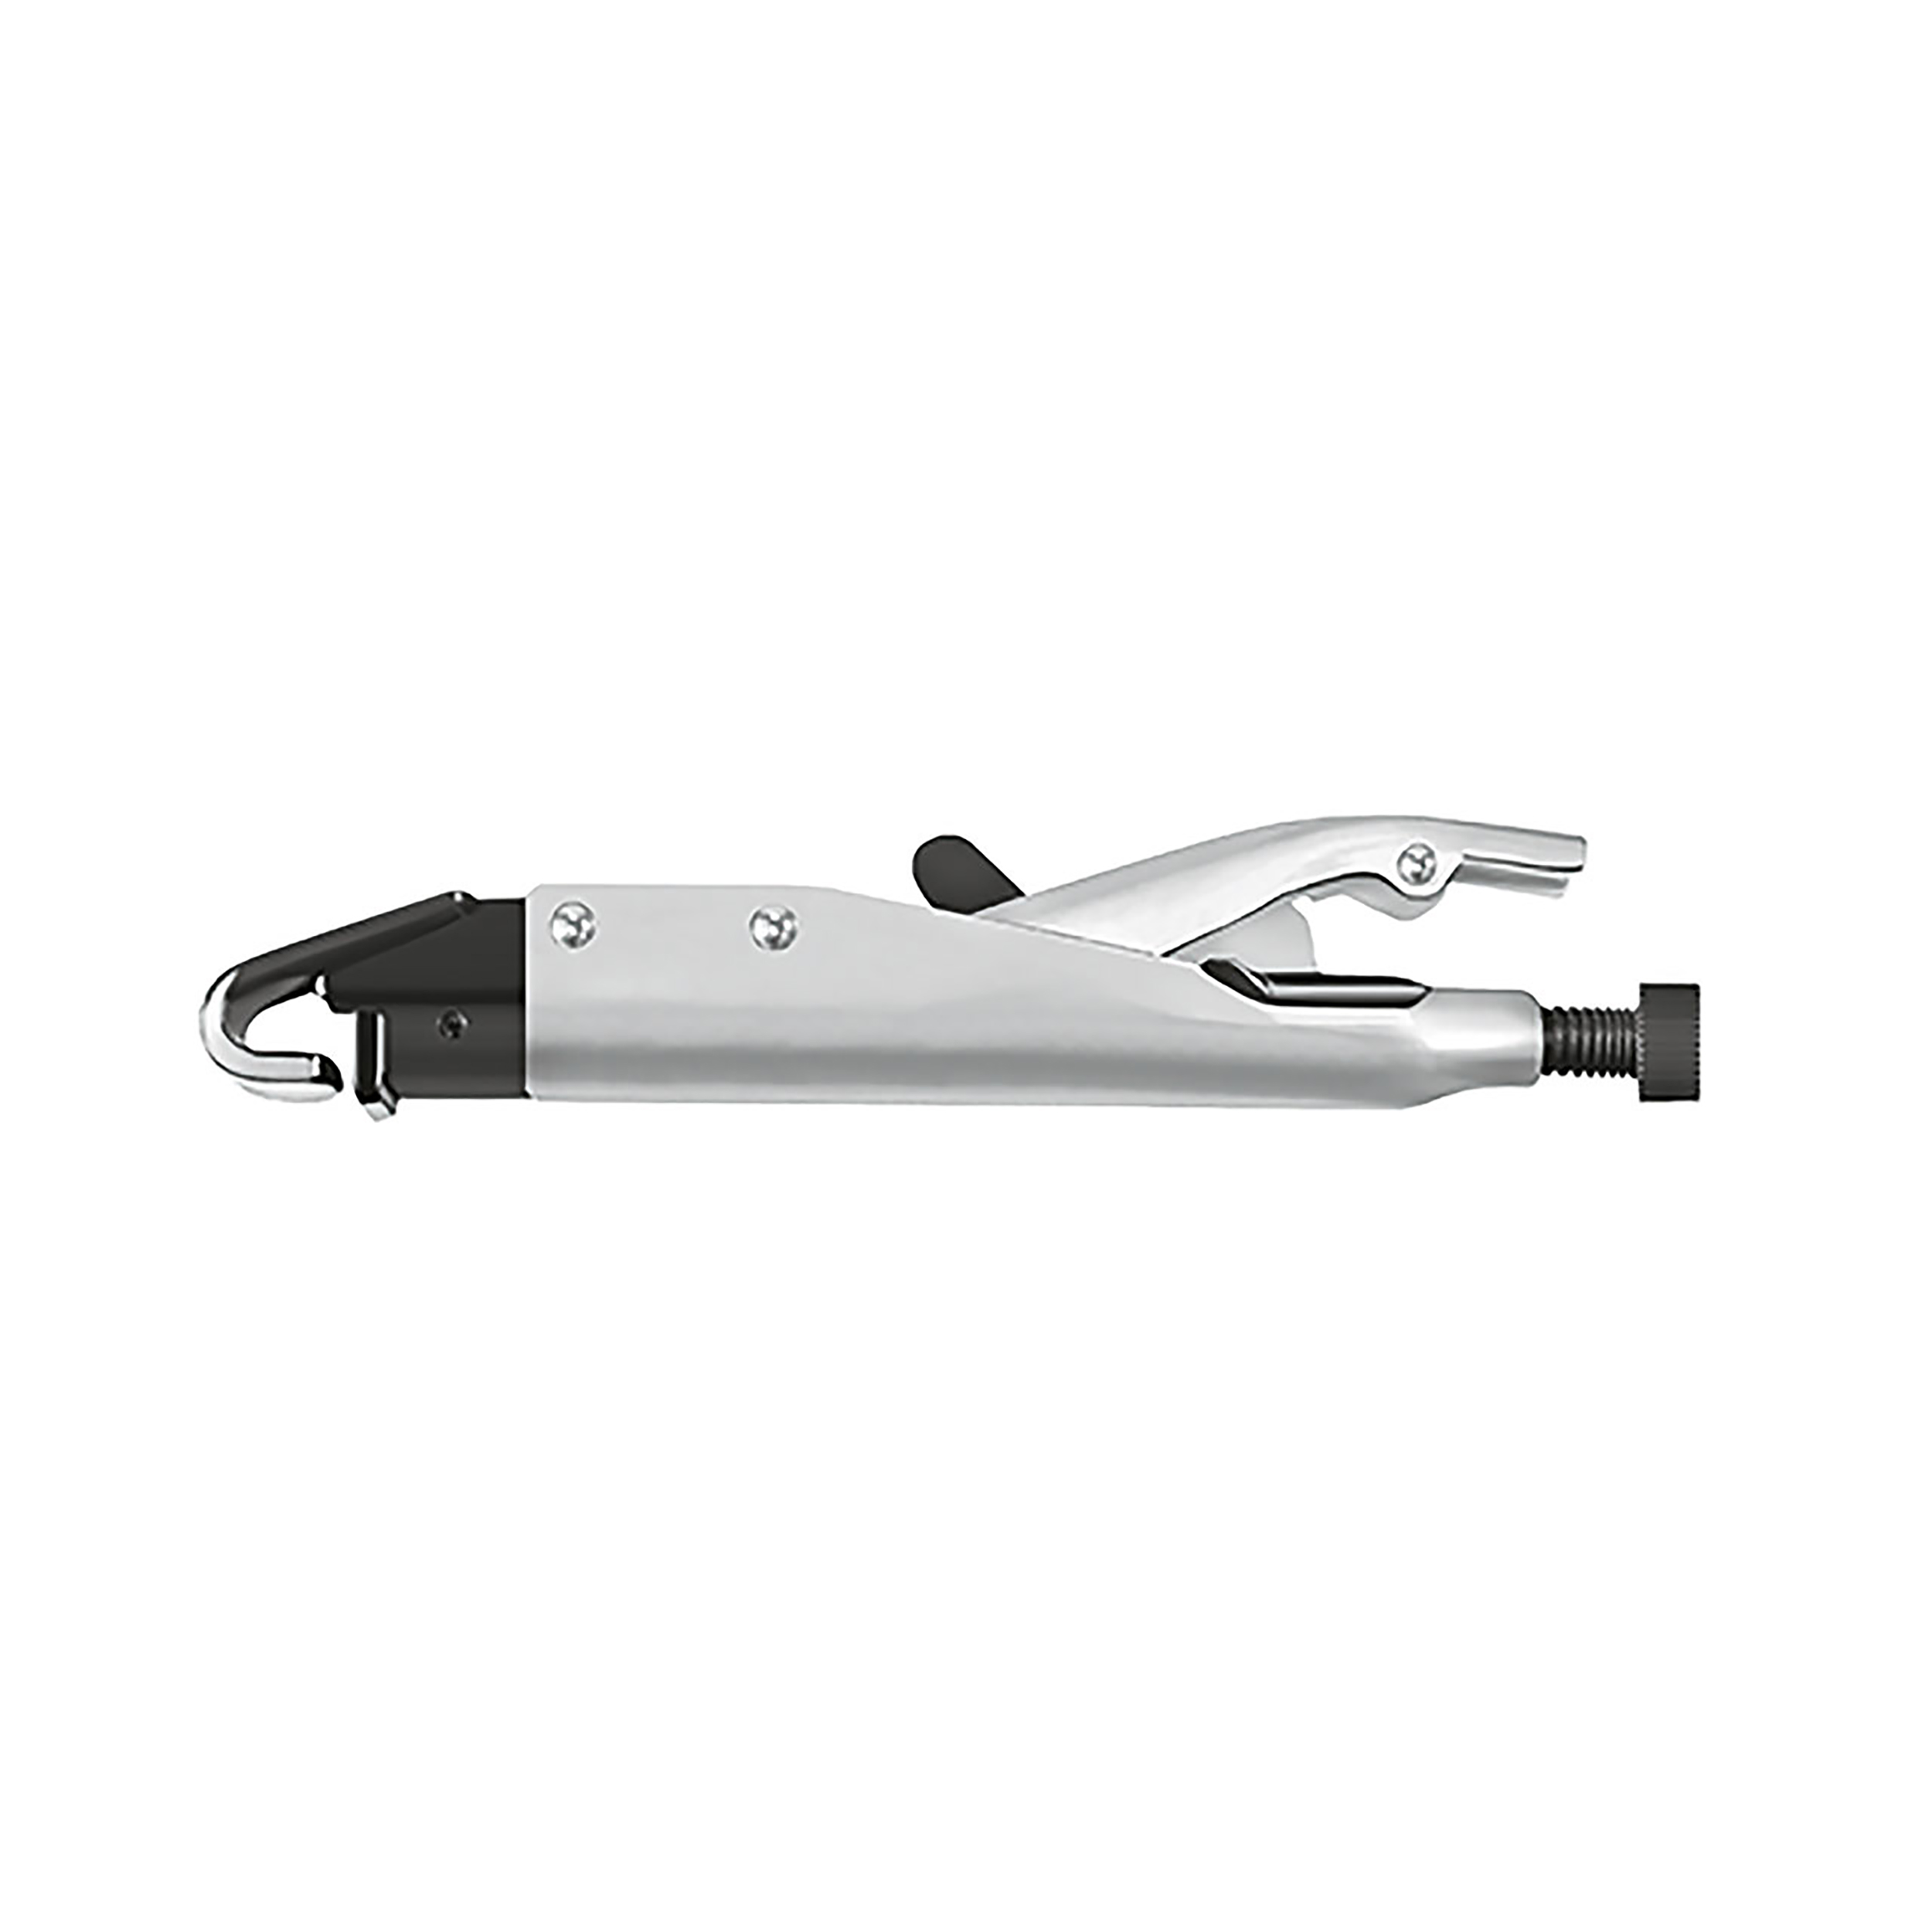 Axial grip pliers, type J, 210 mm, MATADOR item no.: 05870007